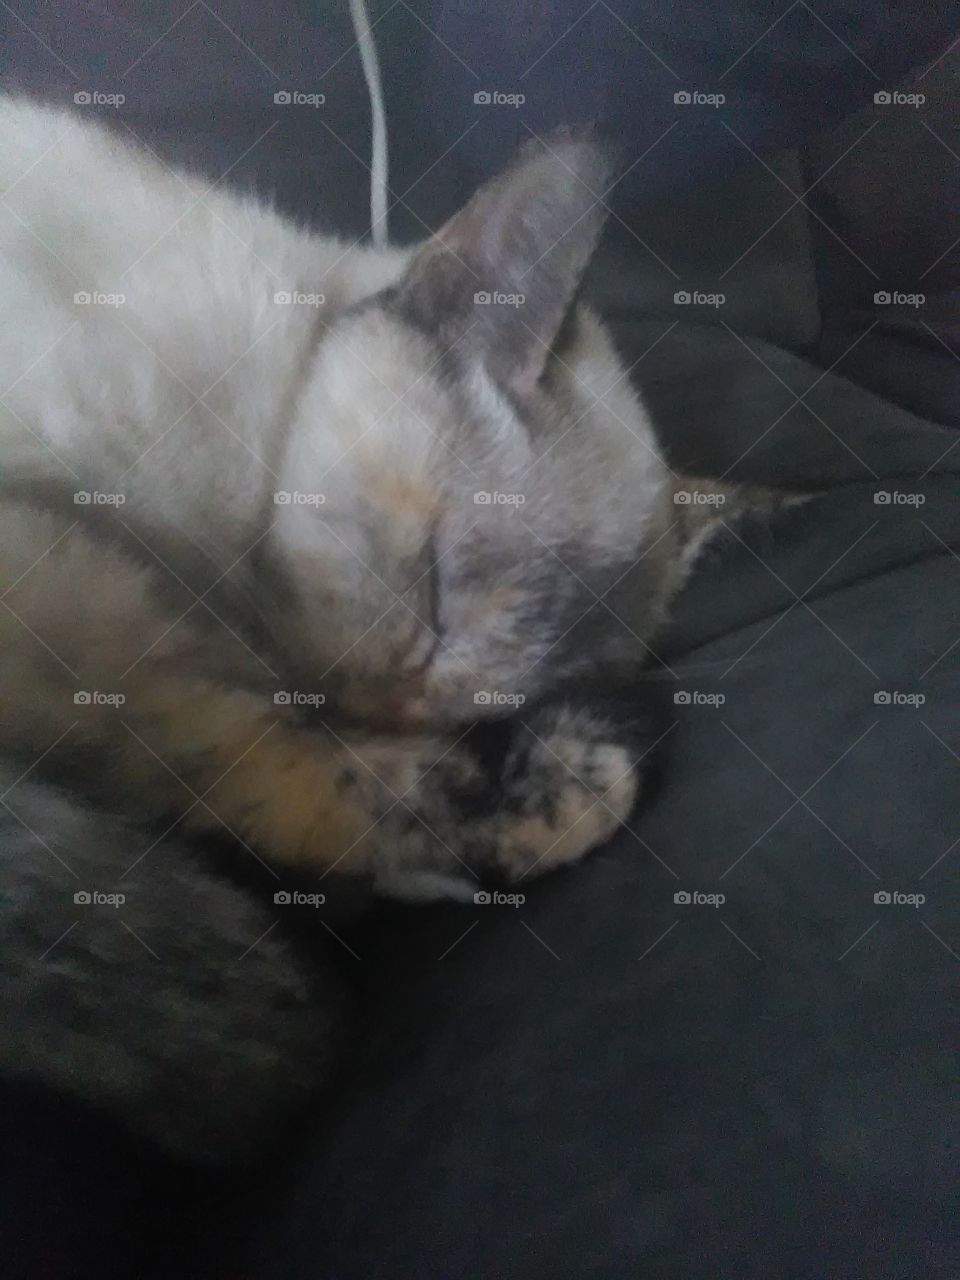 Cute cuddly sleepy Siamese kitty